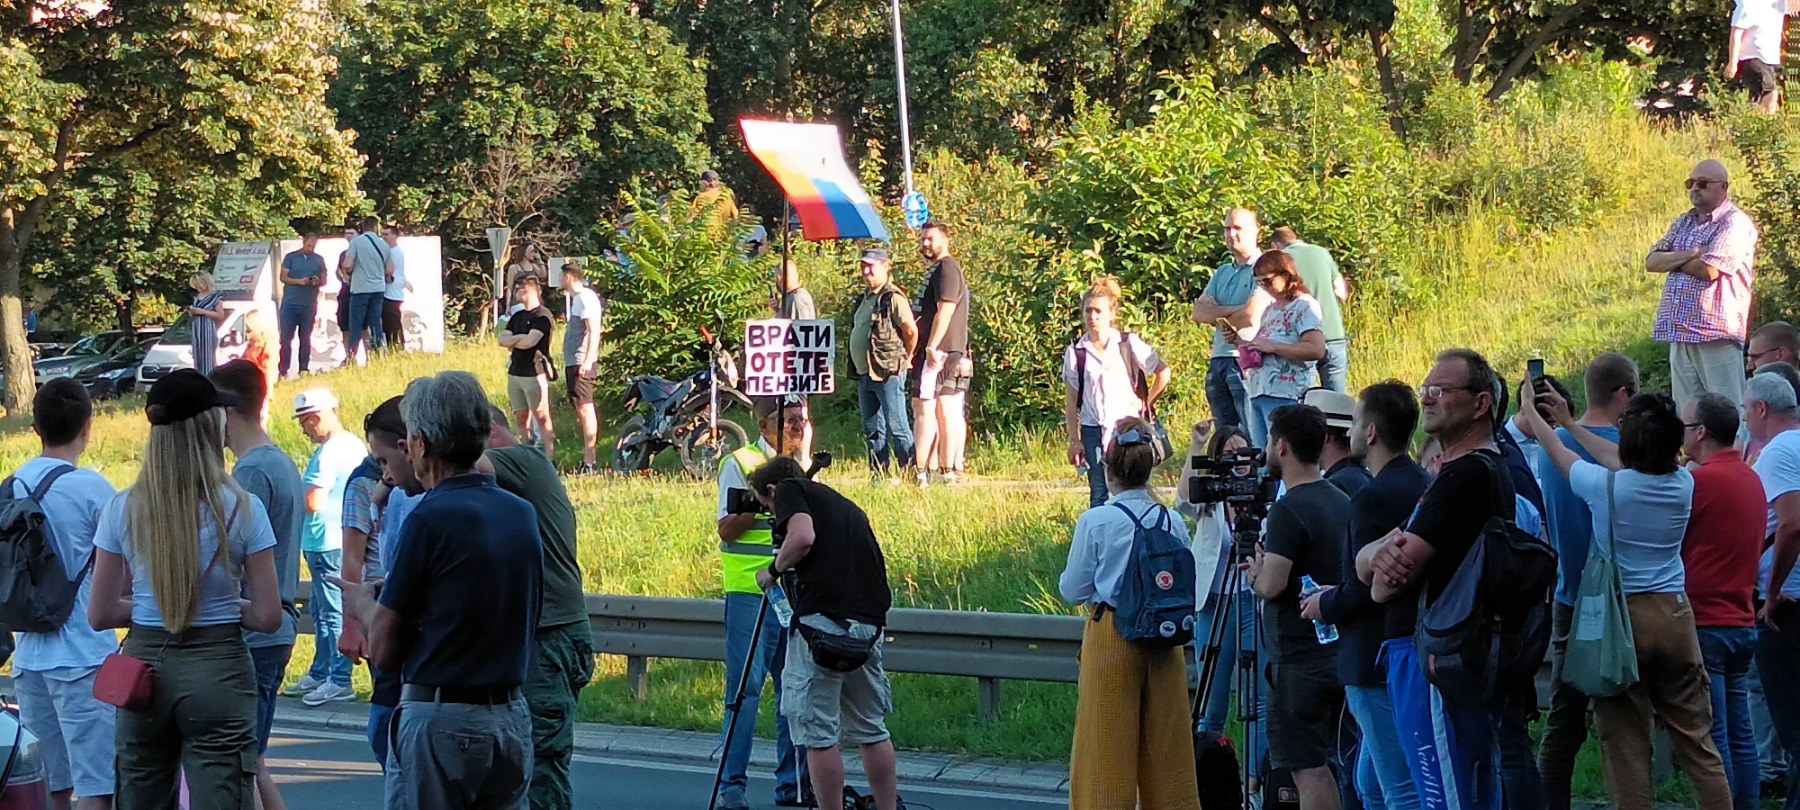 Završene blokade auto-puteva u okviru protesta "Srbija protiv nasilja" 8